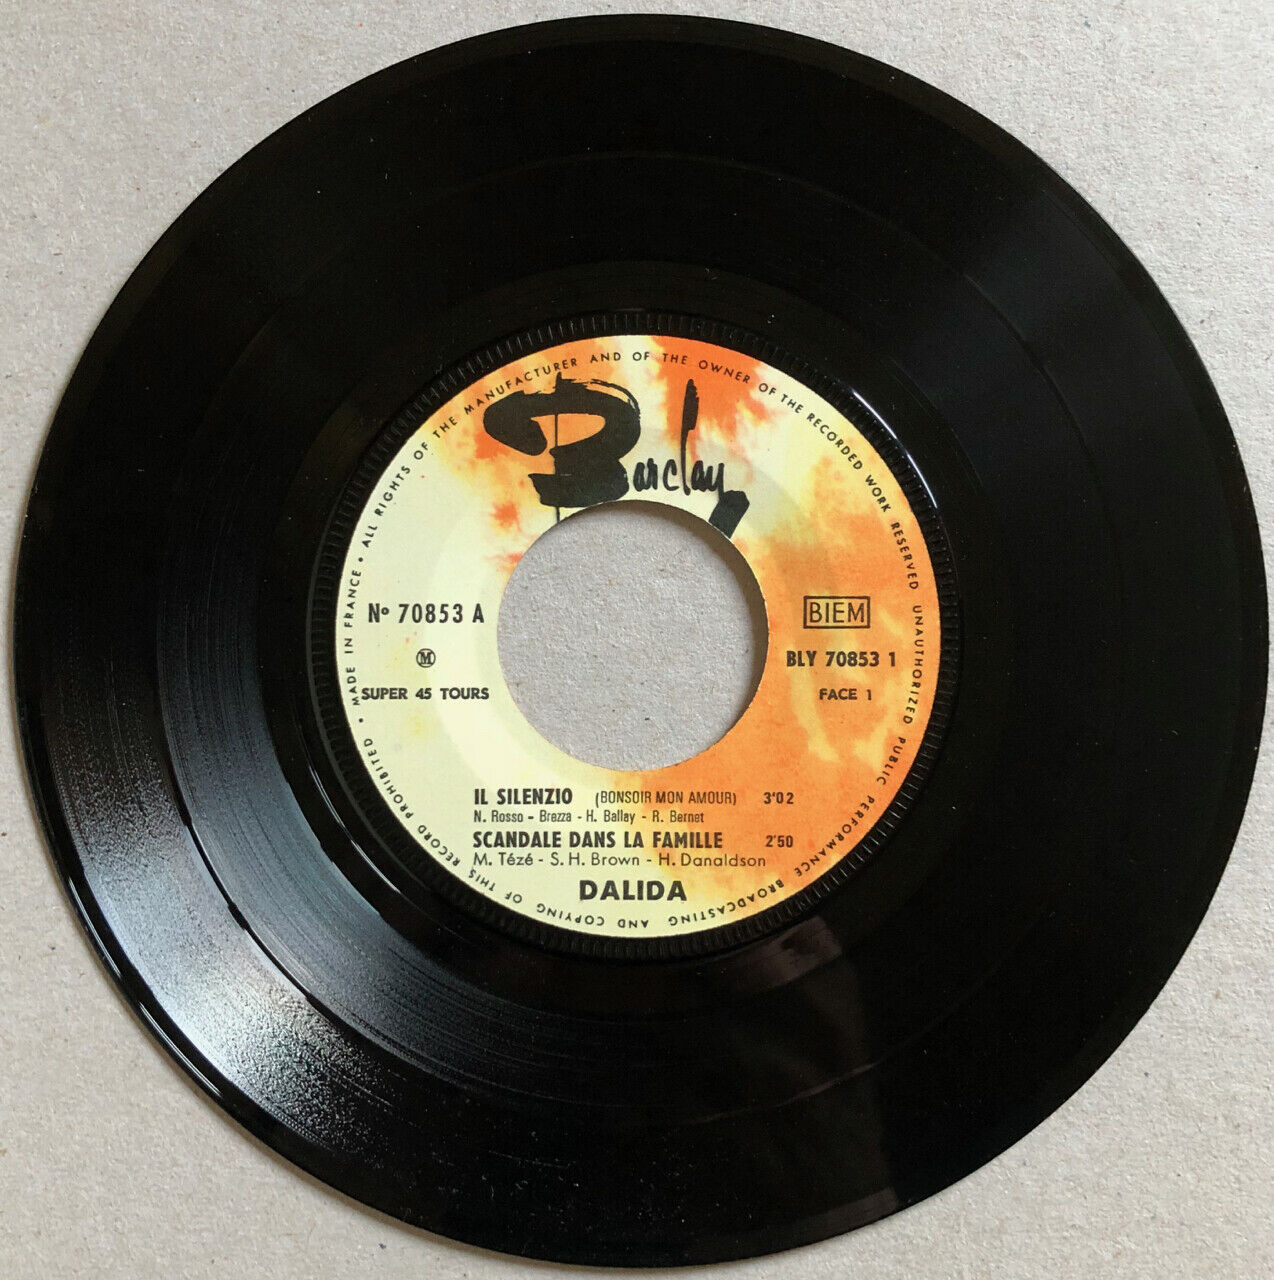 Dalida — Il Silenzio + 3 — original French pressing — Barclay 70853 — 1965.